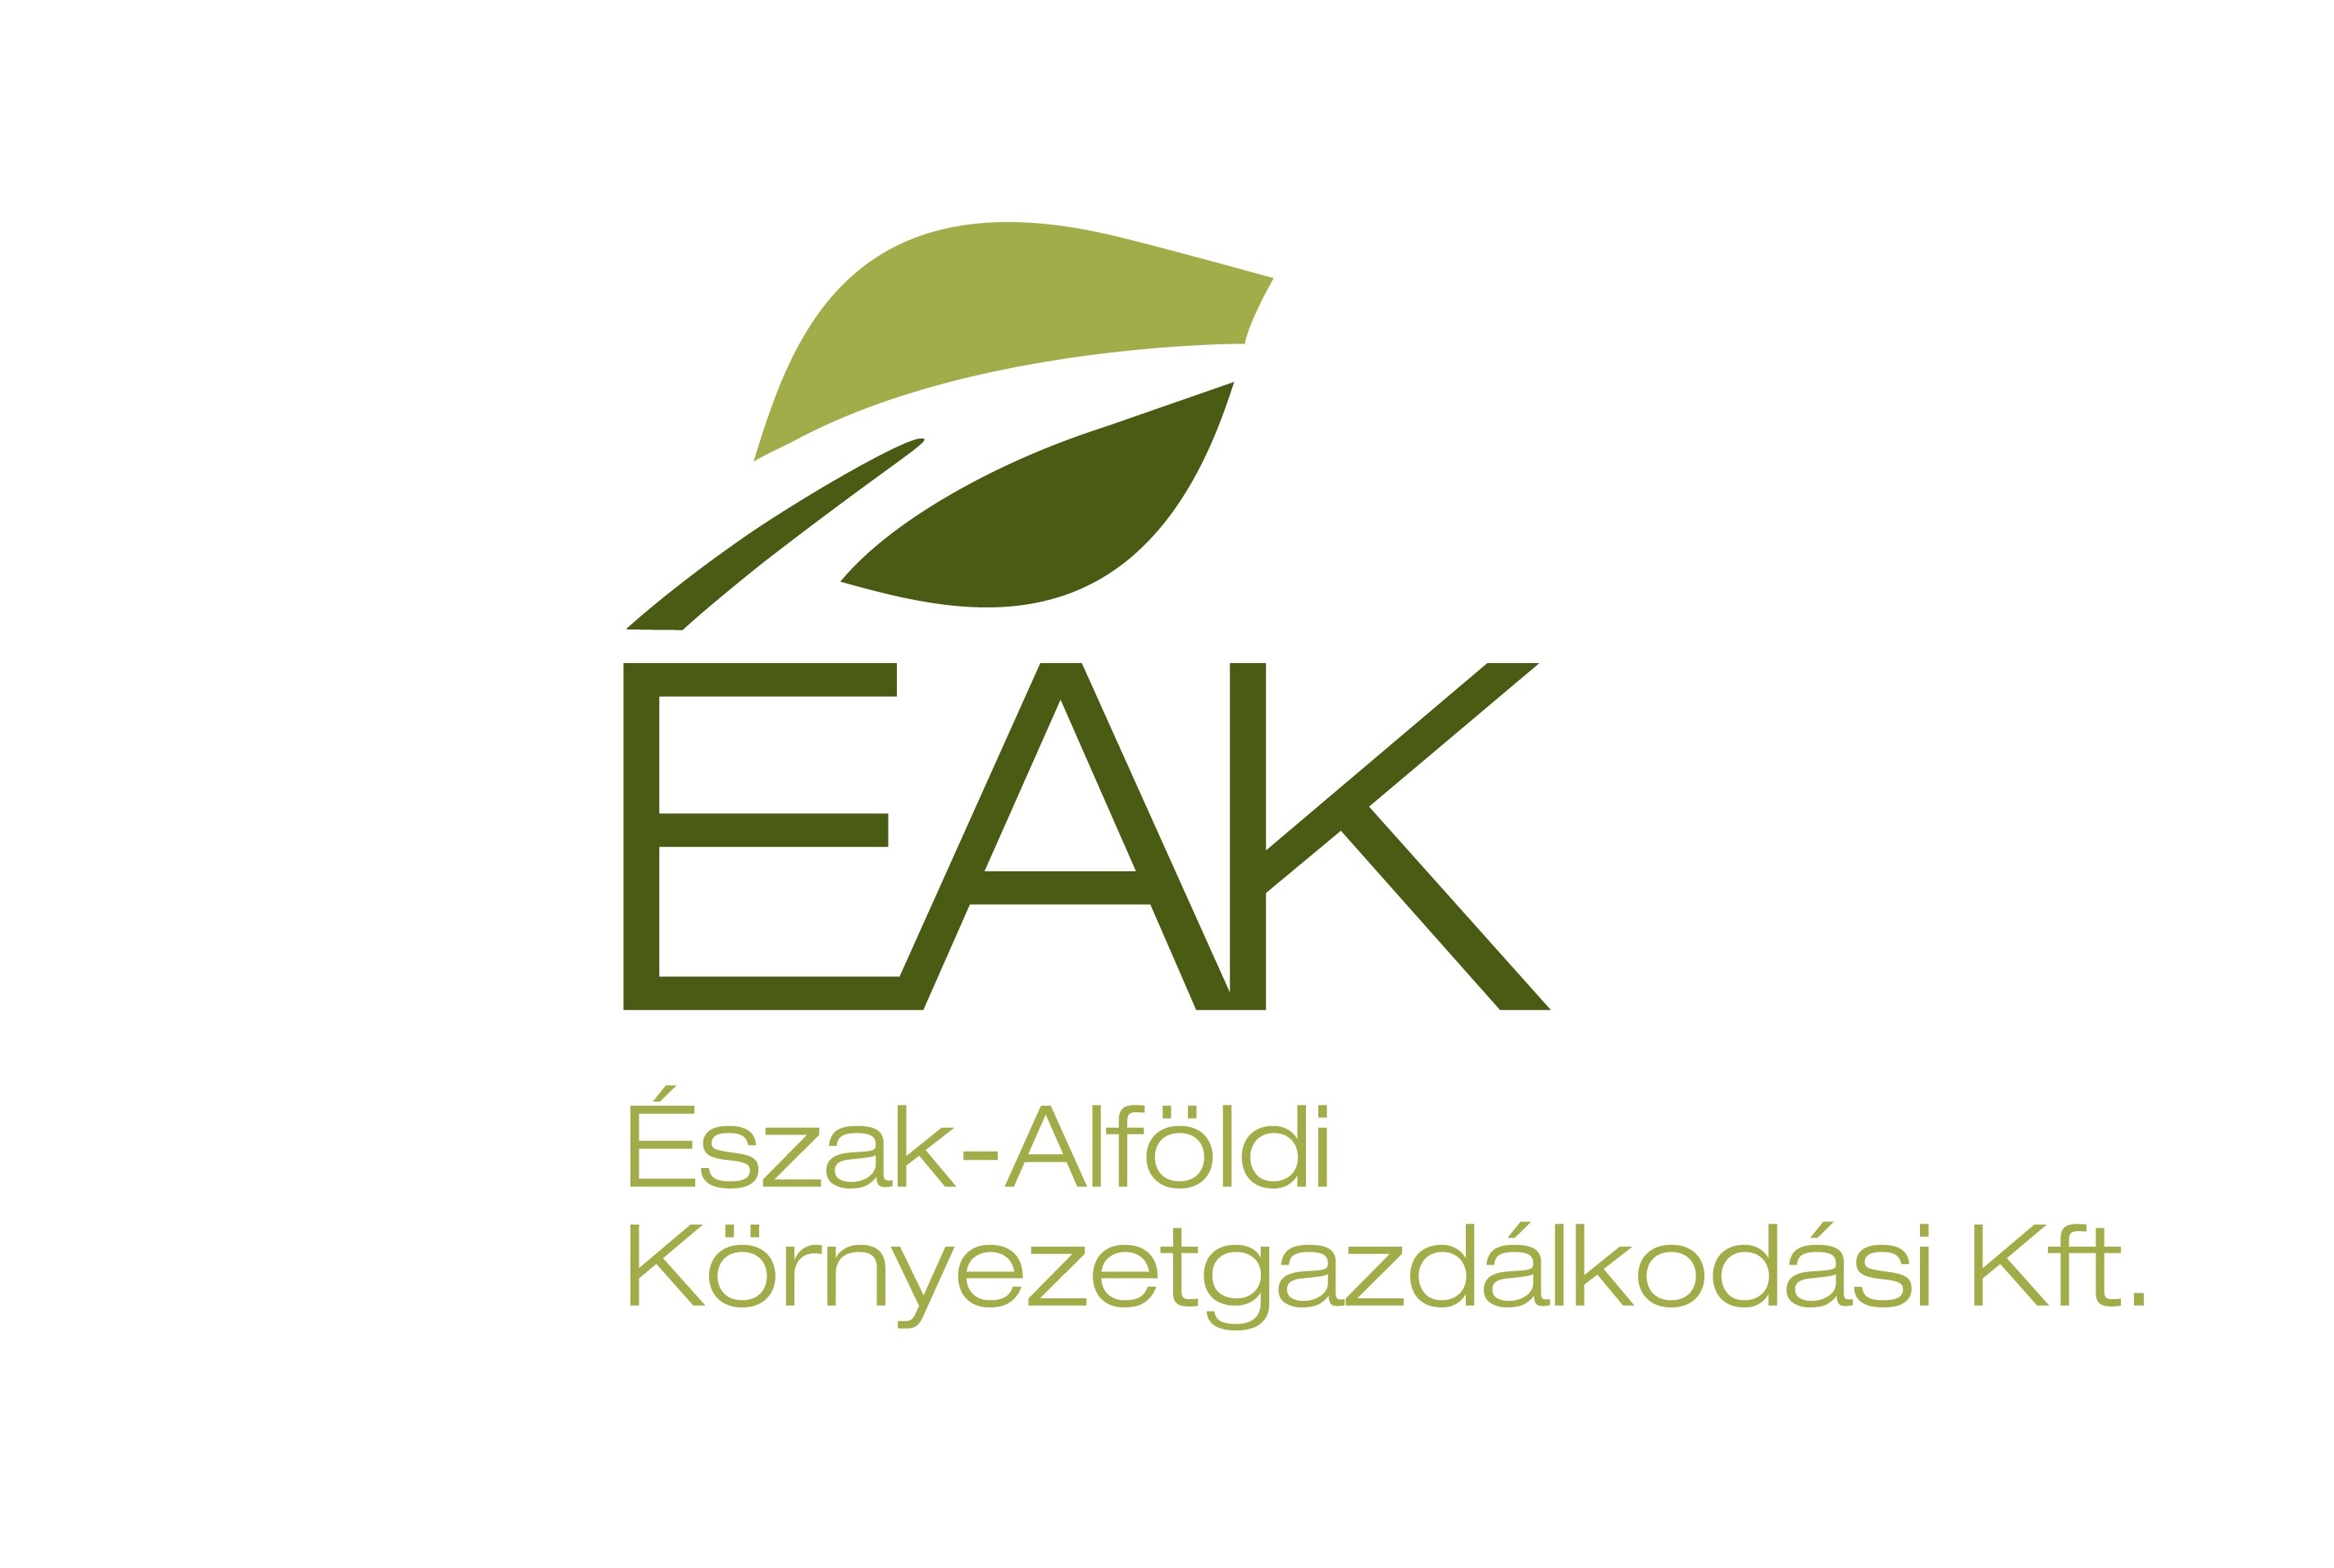 EAK.jpg - 187.95 KB